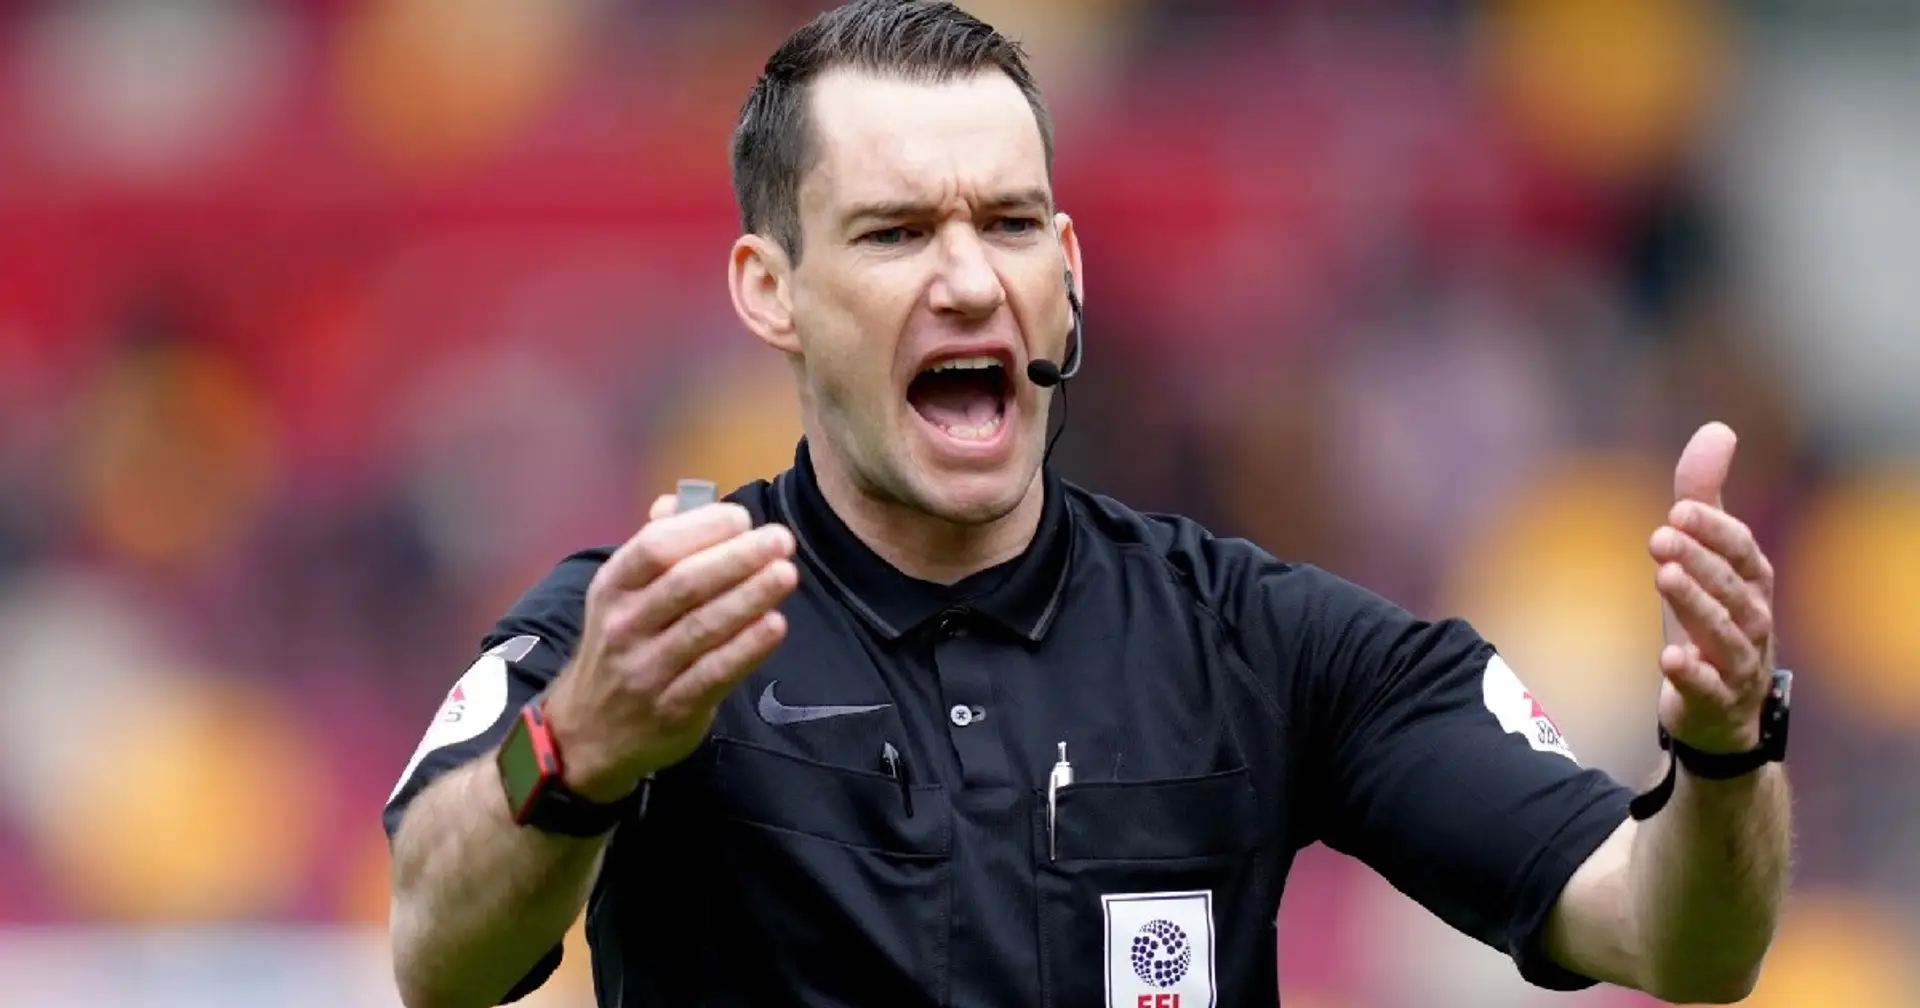 Referee named for Brentford clash & 2 other under-radar stories